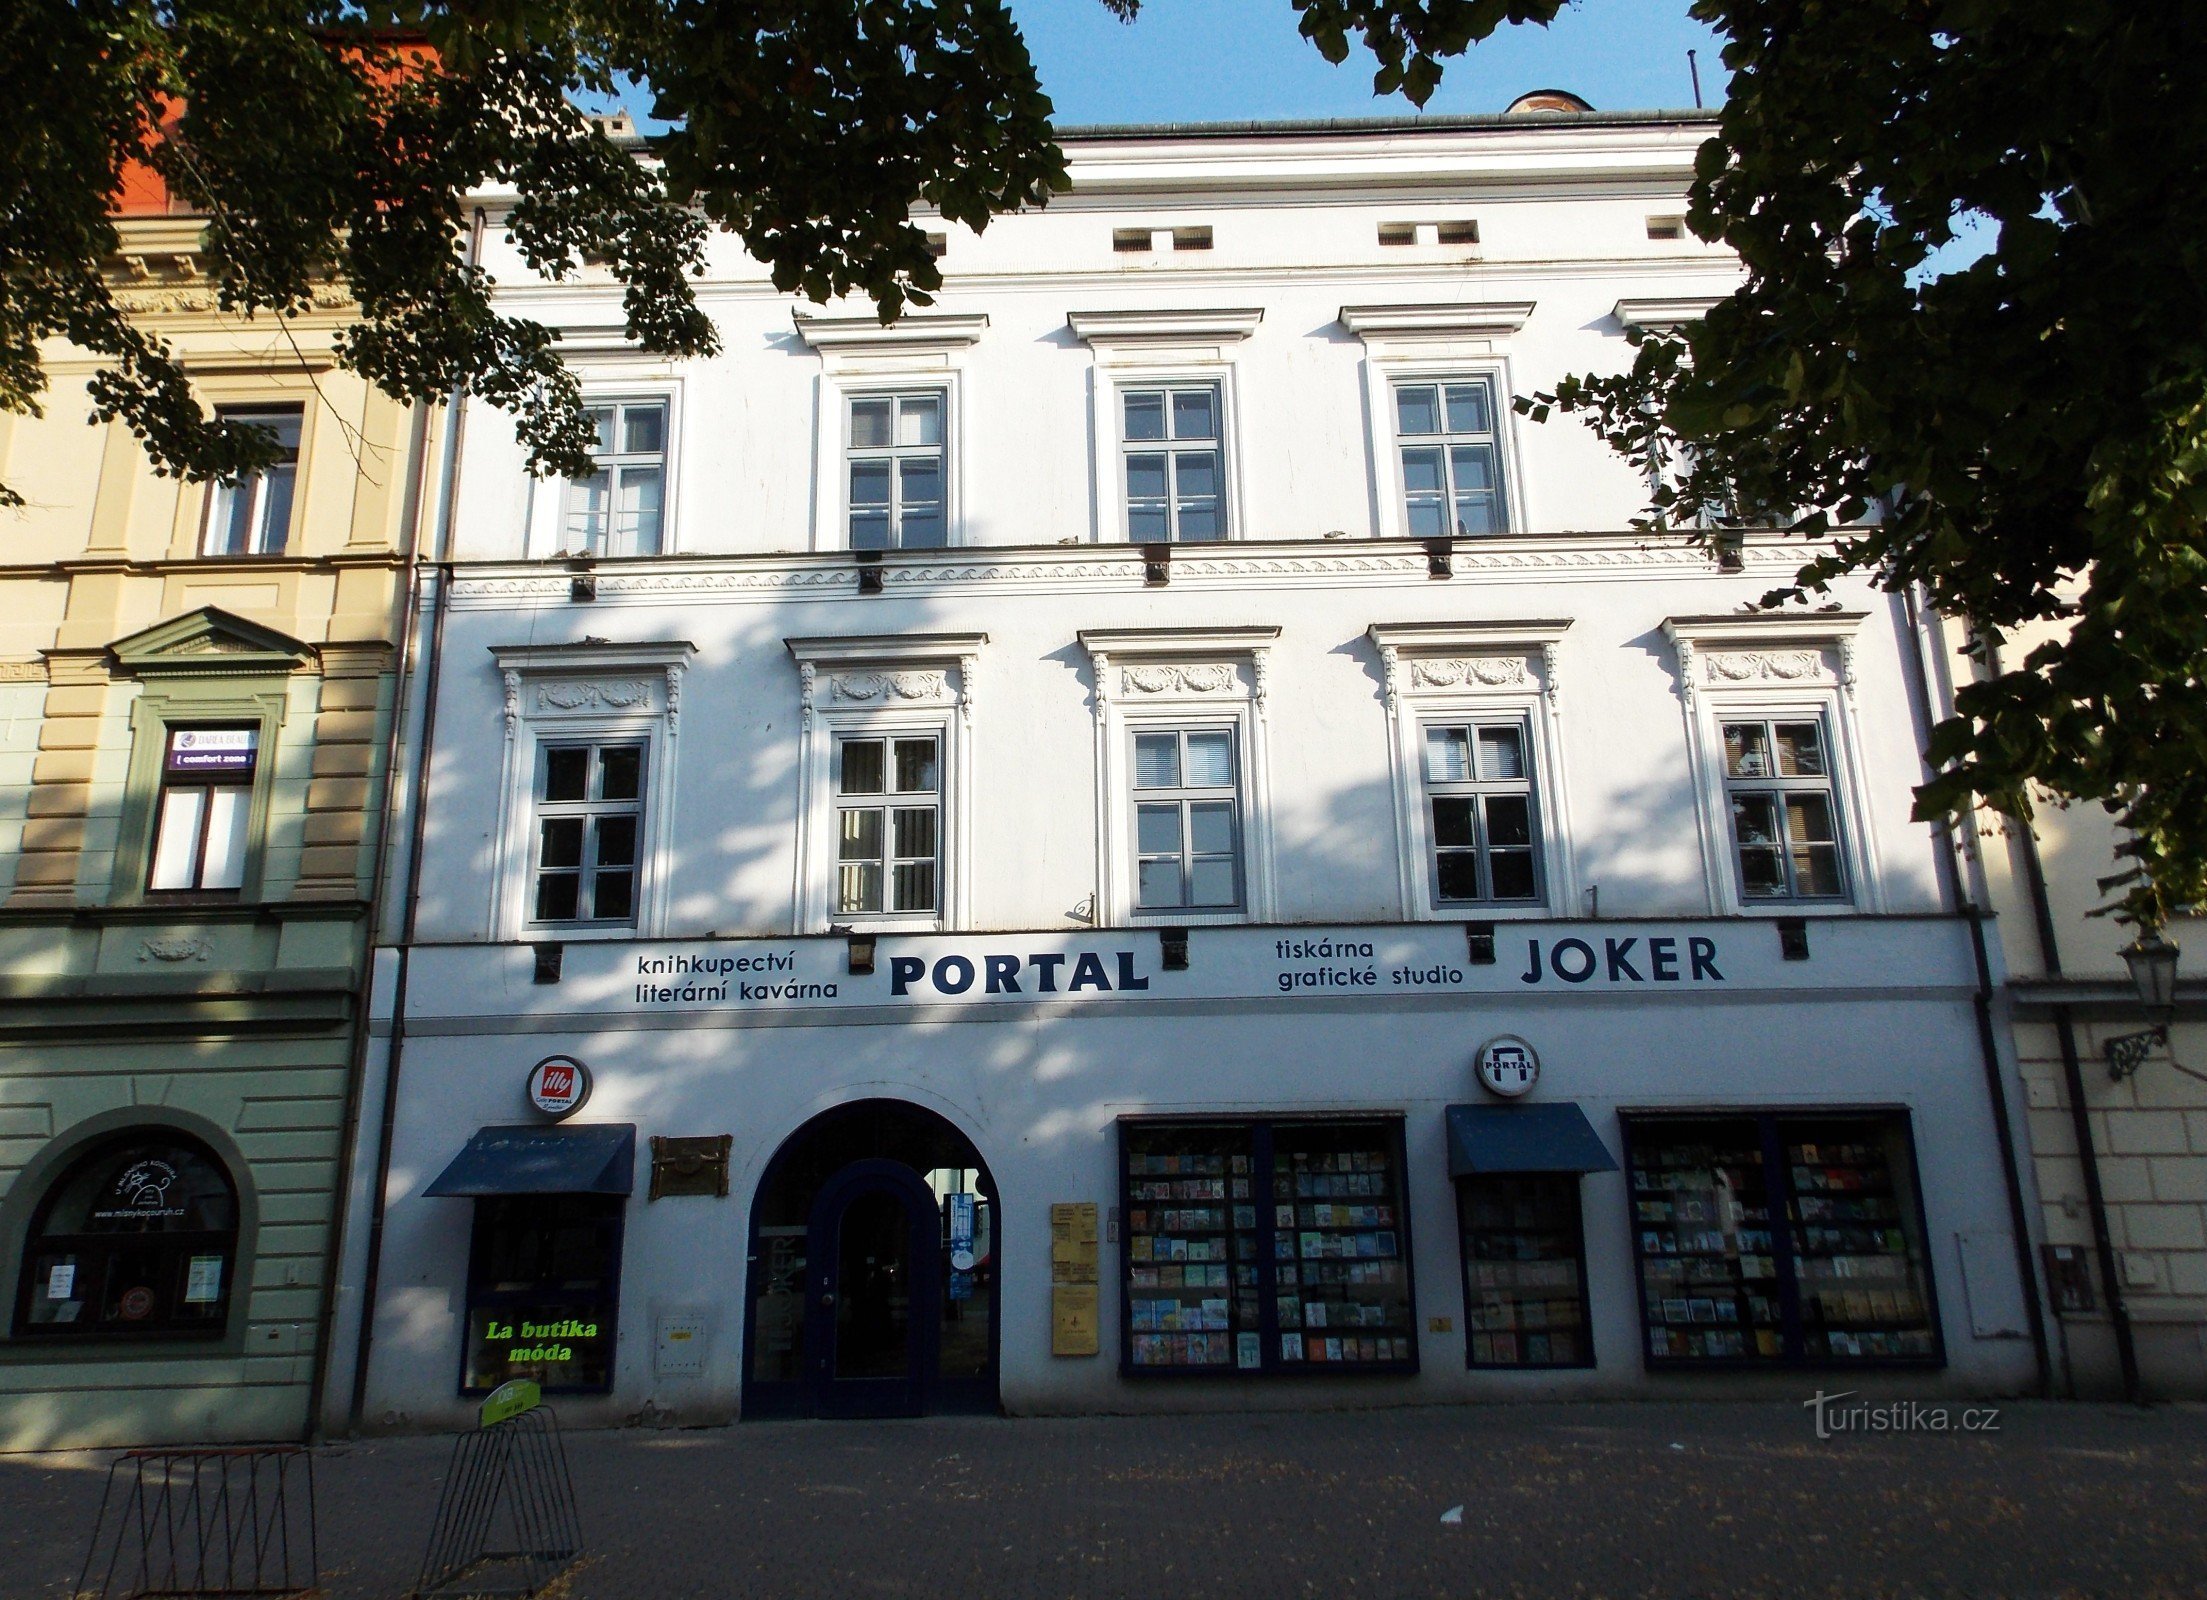 Portal Kuća knjiga - Uherské Hradiště